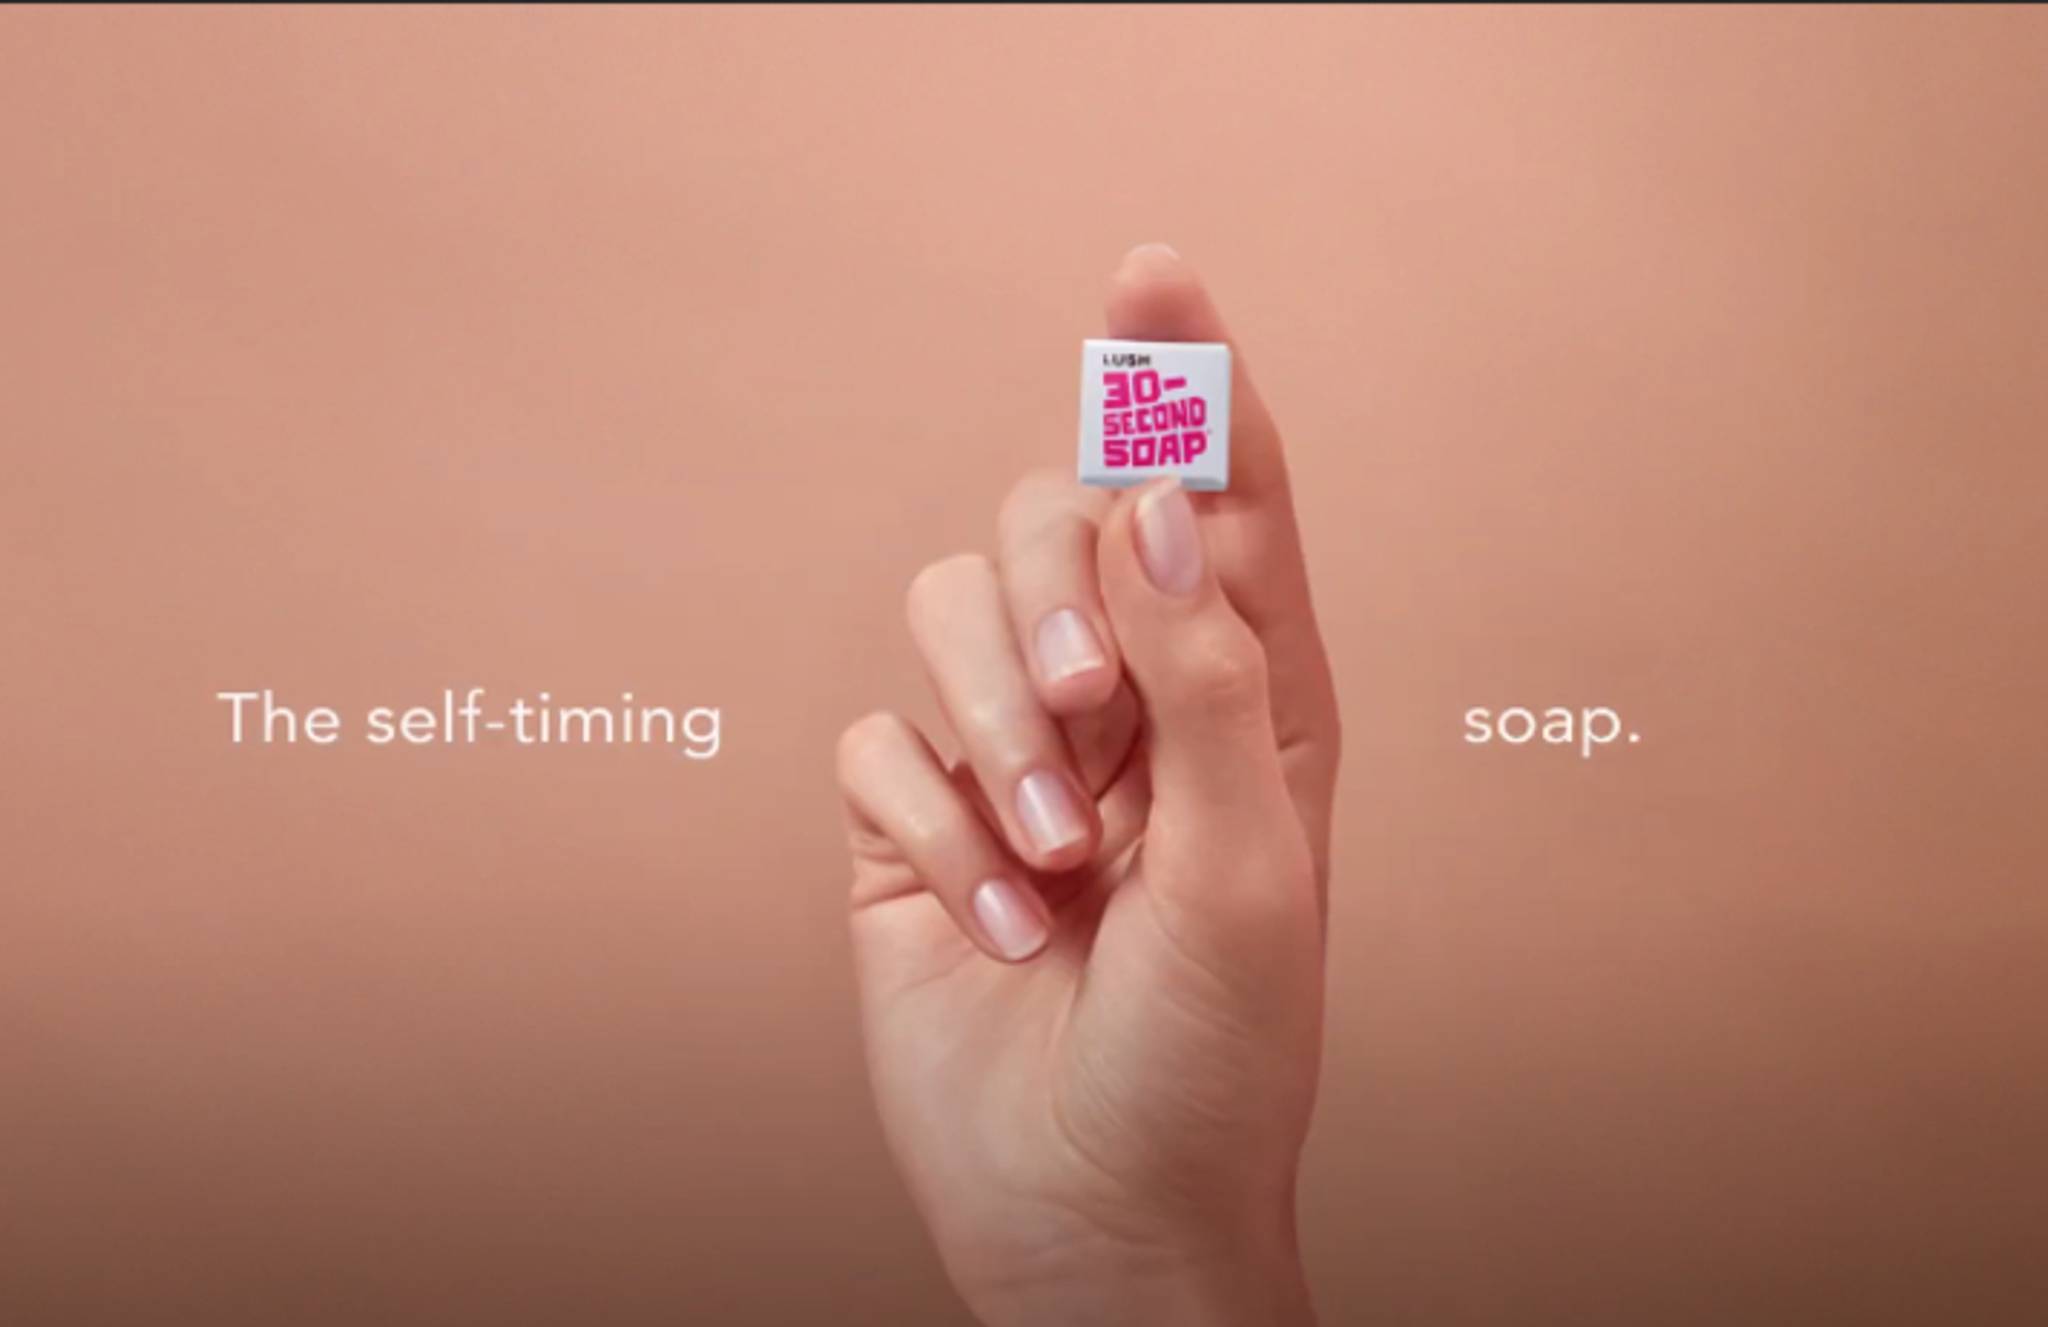 Lush’s 30 second soap nudges healthy hand-wash habit